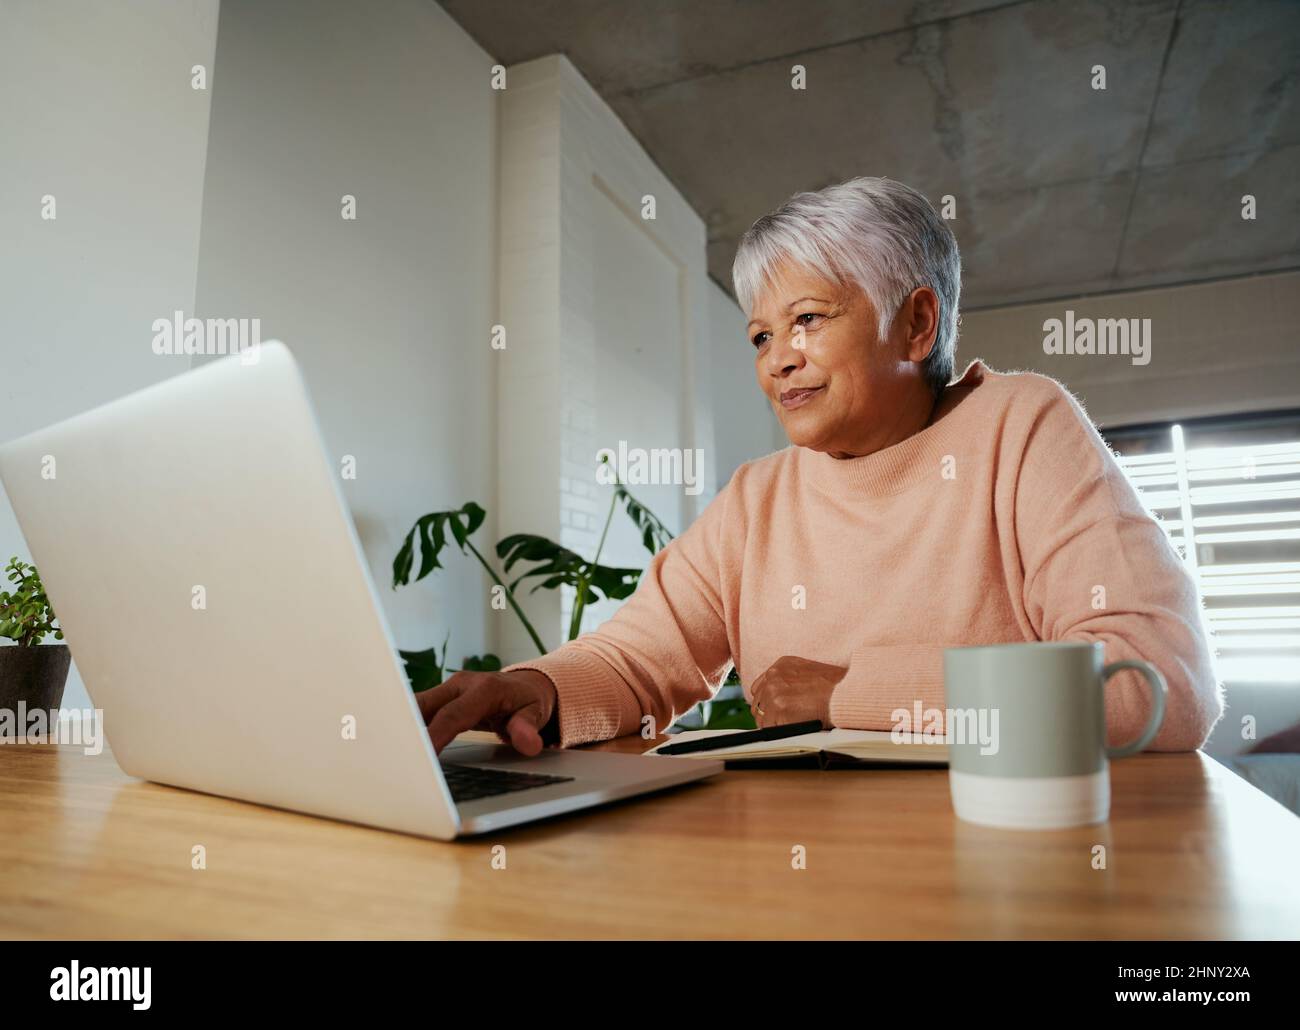 Femme âgée, multiethnique, assise au comptoir de la maison, défilant sur son ordinateur portable, souriant. Banque D'Images